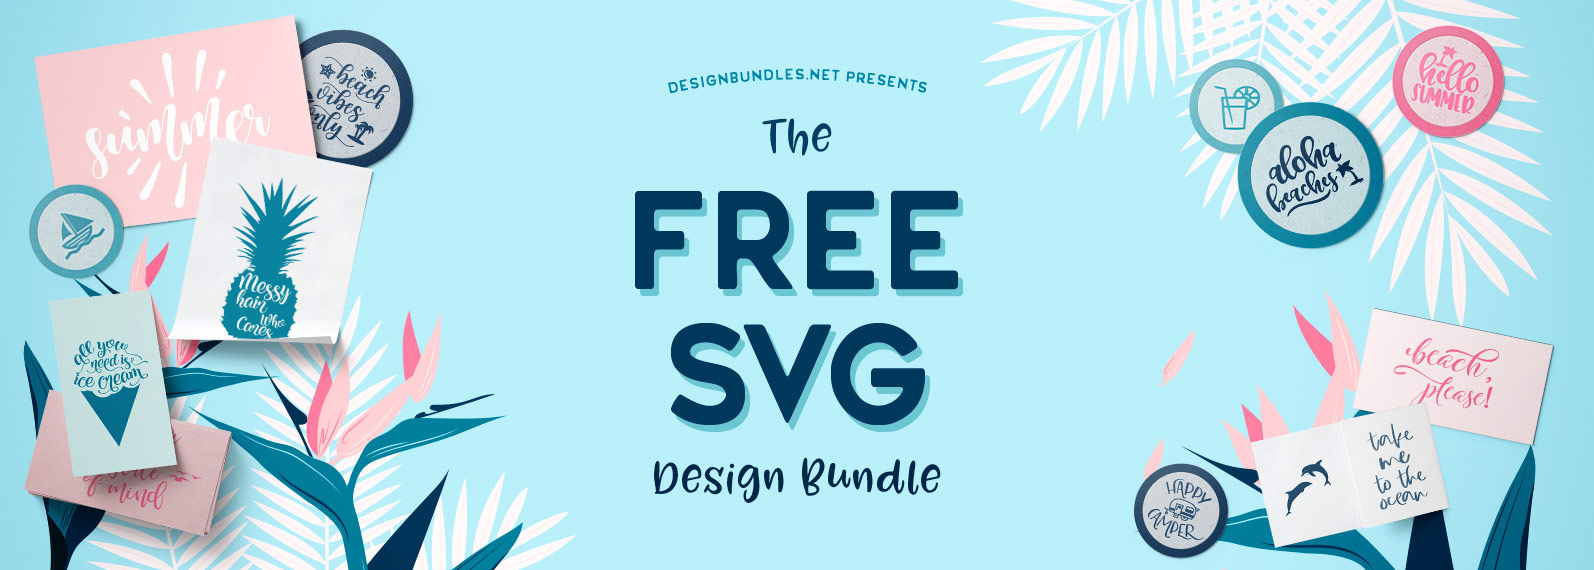 Free Free 137 Sparkol Svg Images Free Download SVG PNG EPS DXF File